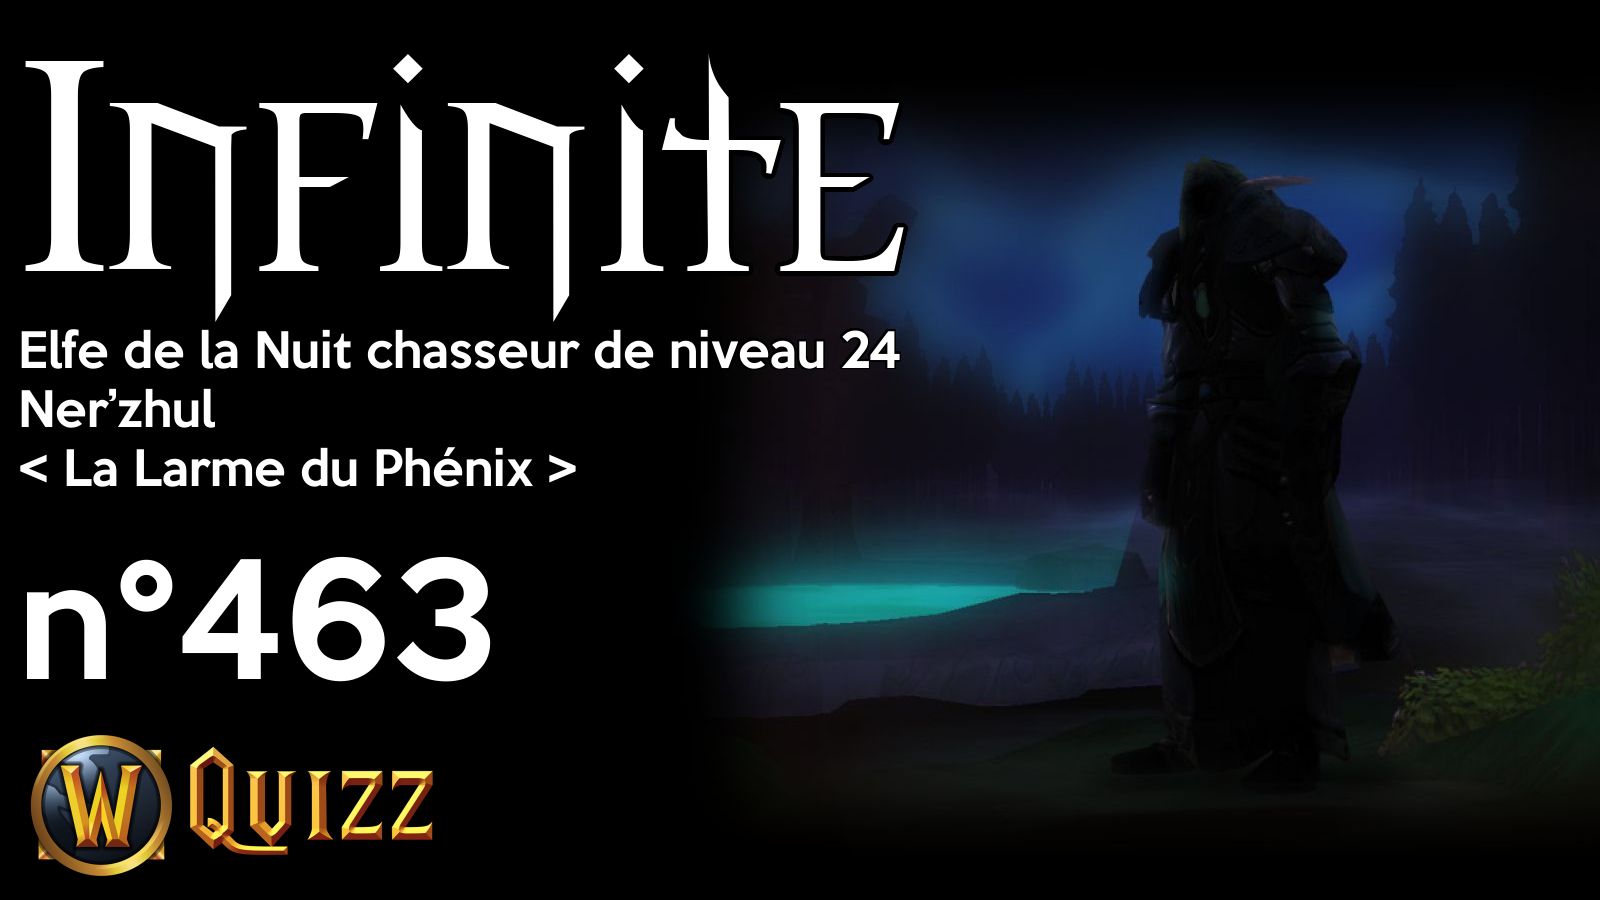 Infinite, Elfe de la Nuit chasseur de niveau 24, Ner’zhul